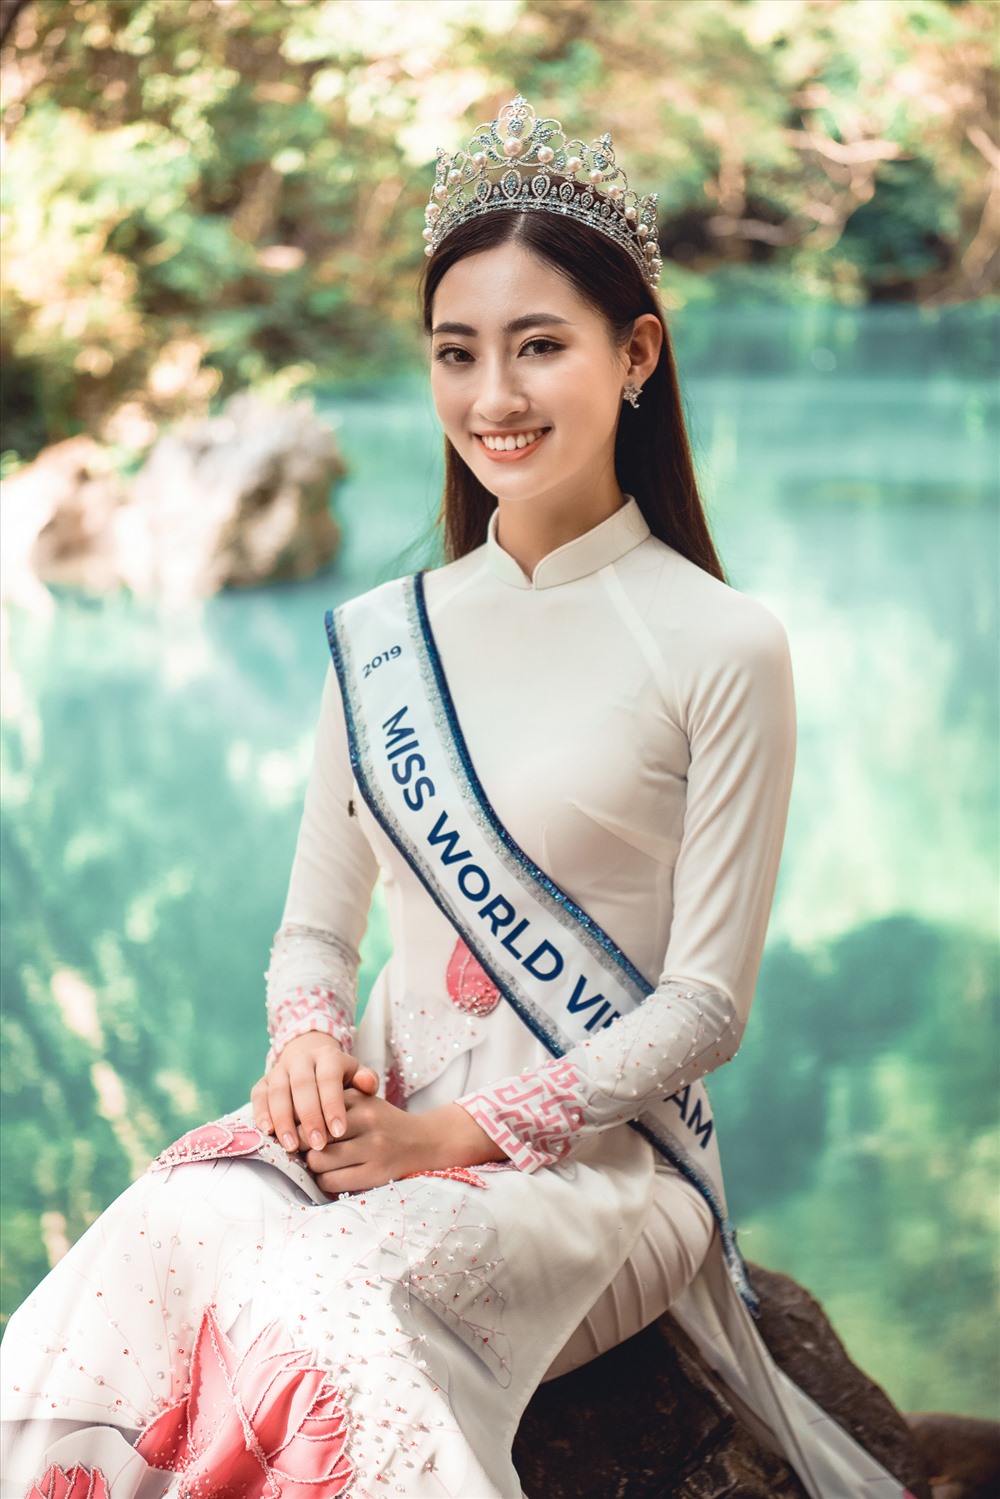 Sau chuyến về thăm quê hương với những hoạt động ý nghĩa, Lương Thuỳ Linh sẽ bước vào giai đoạn tập luyện và trau dồi để tham dự cuộc thi Miss World dự kiến diễn ra vào cuối năm tại Anh. Ảnh: Vũ Toàn.